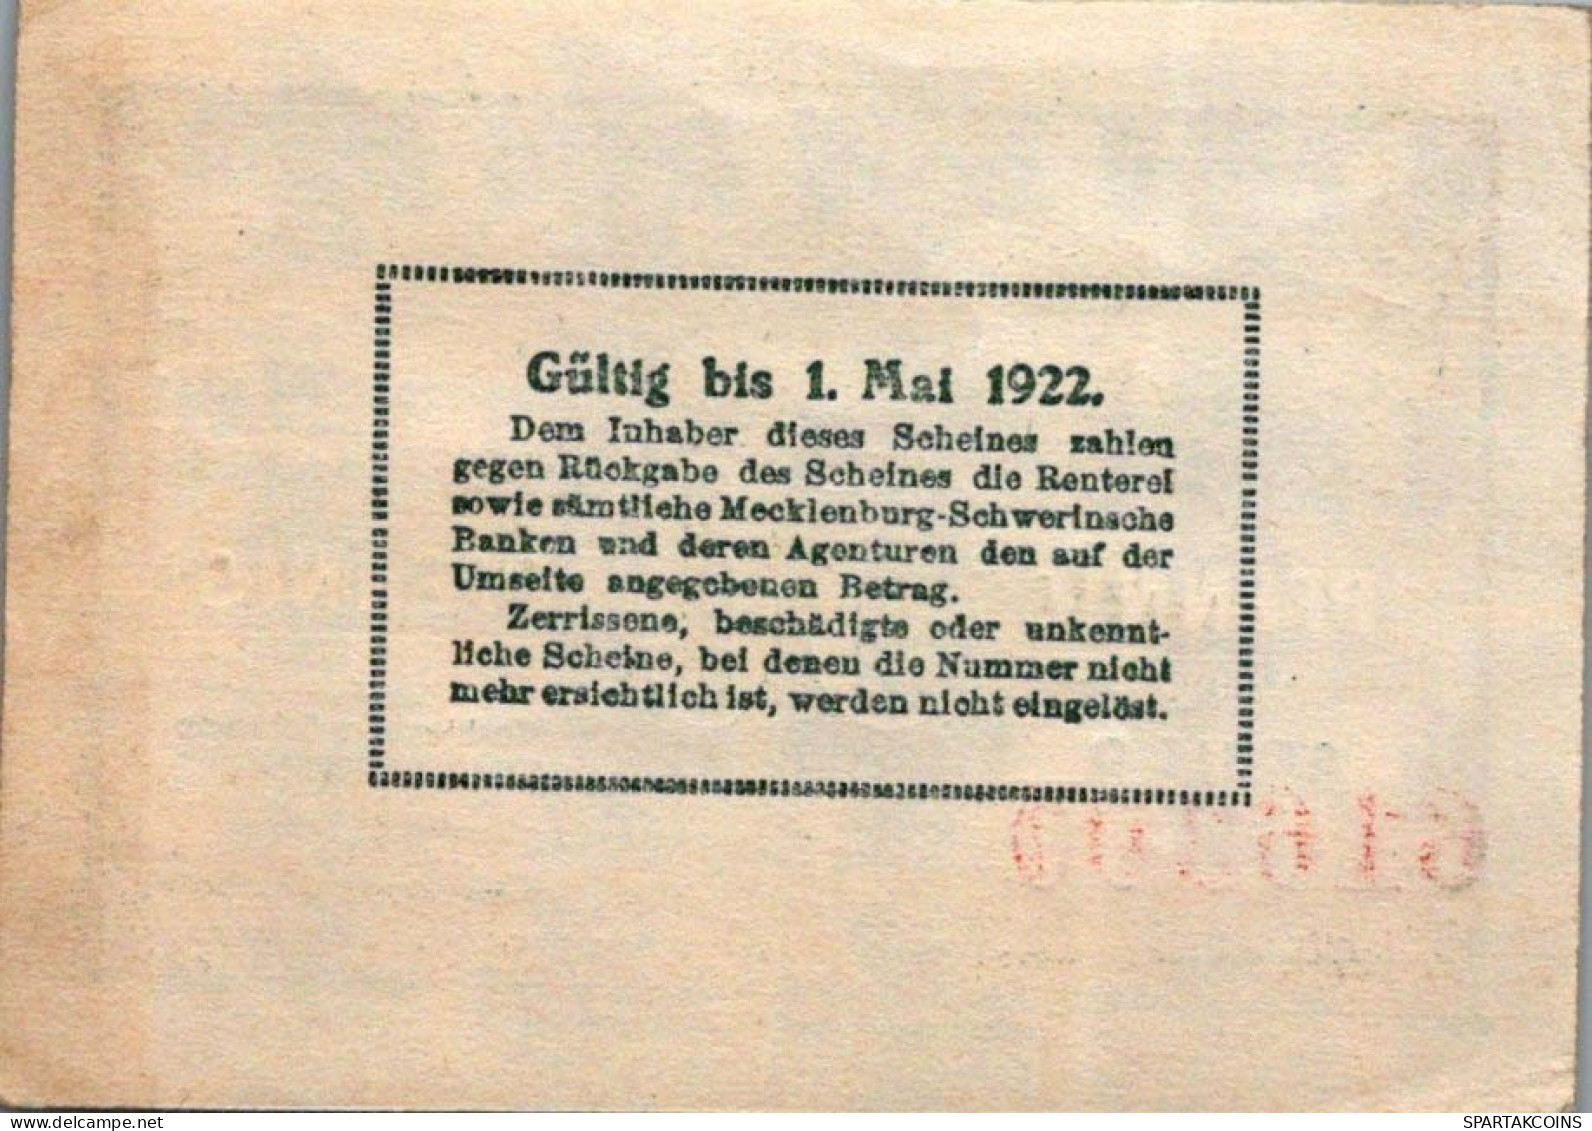 50 PFENNIG 1922 MECKLENBURG-SCHWERIN Mecklenburg-Schwerin DEUTSCHLAND #PF986 - Lokale Ausgaben